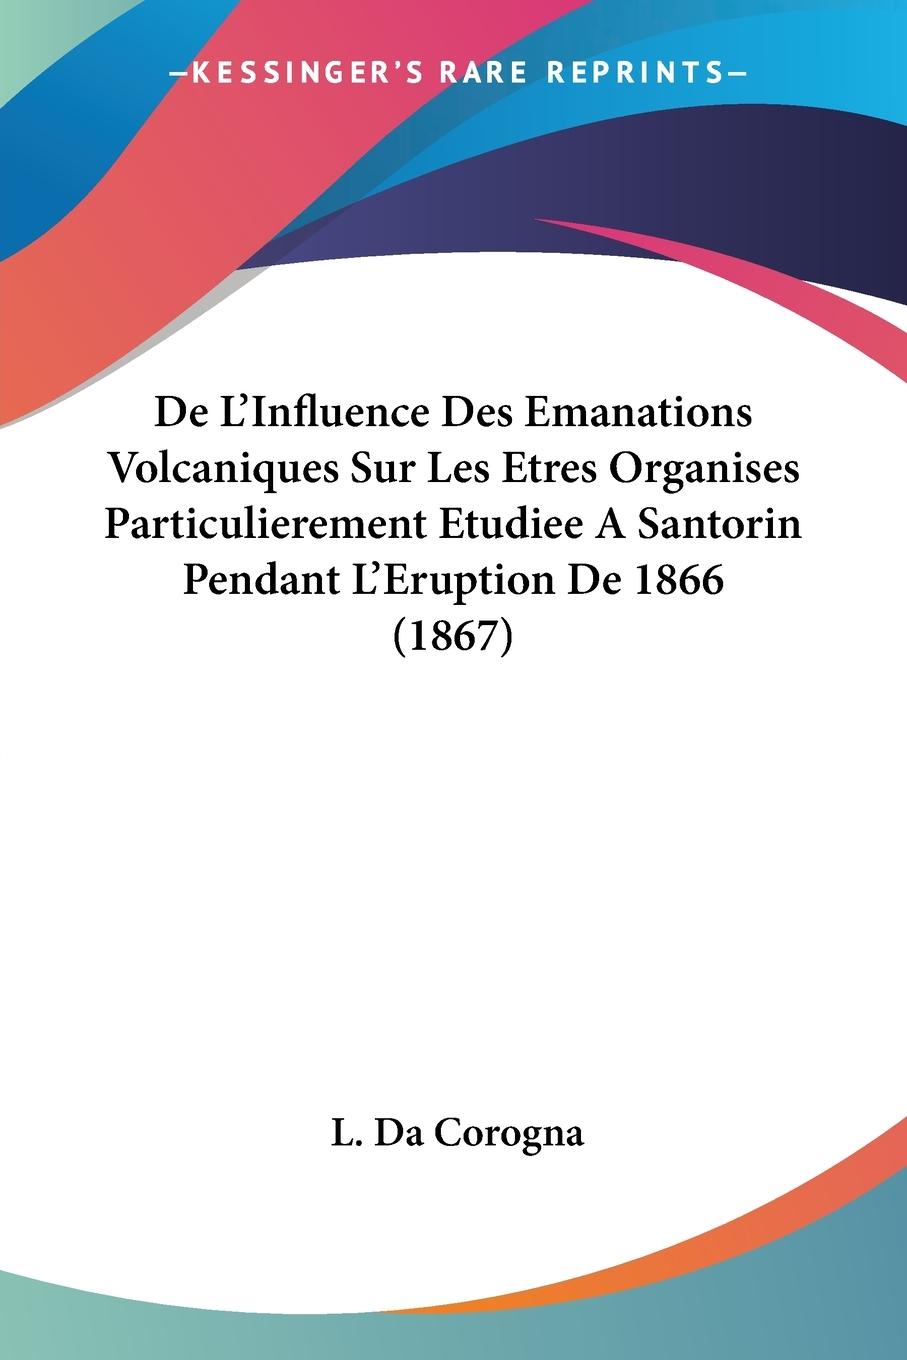 De L Influence Des Emanations Volcaniques Sur Les Etres Organises Particulierement Etudiee A Santorin Pendant L Eruption De 1866 (1867) - Da Corogna, L.